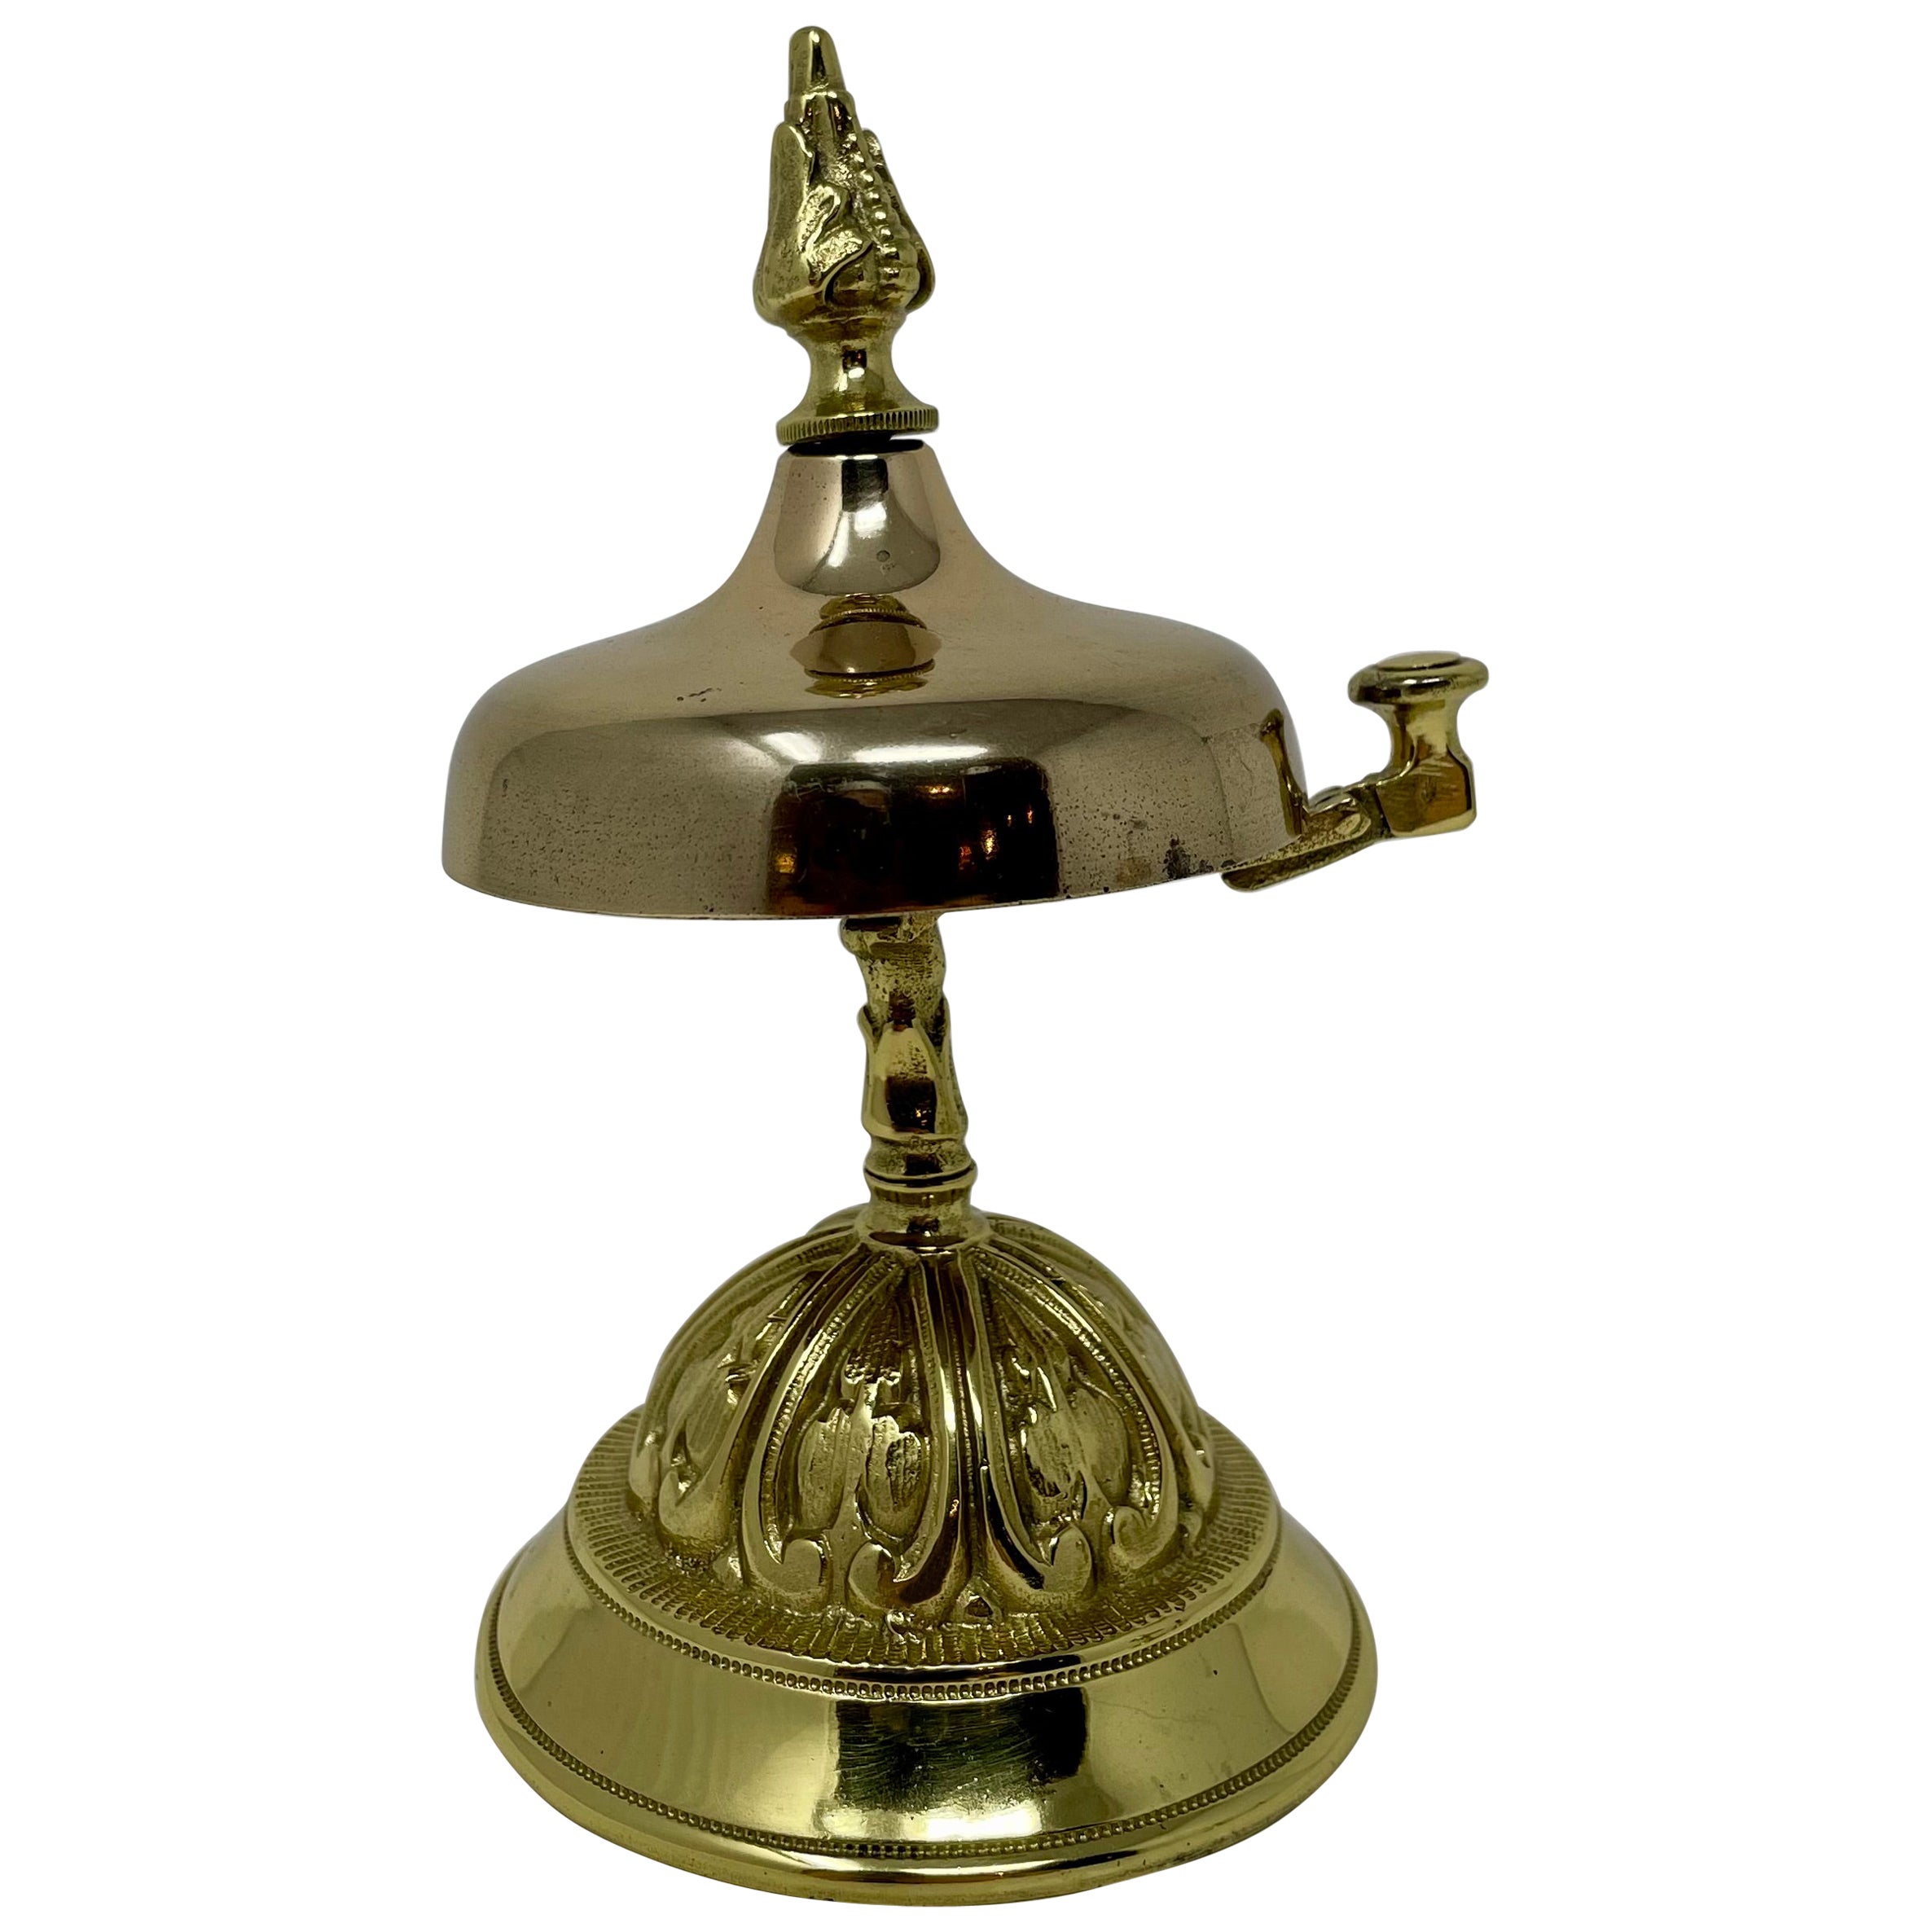 Bell de bureau victorienne anglaise ancienne en laiton, vers 1880-1890.